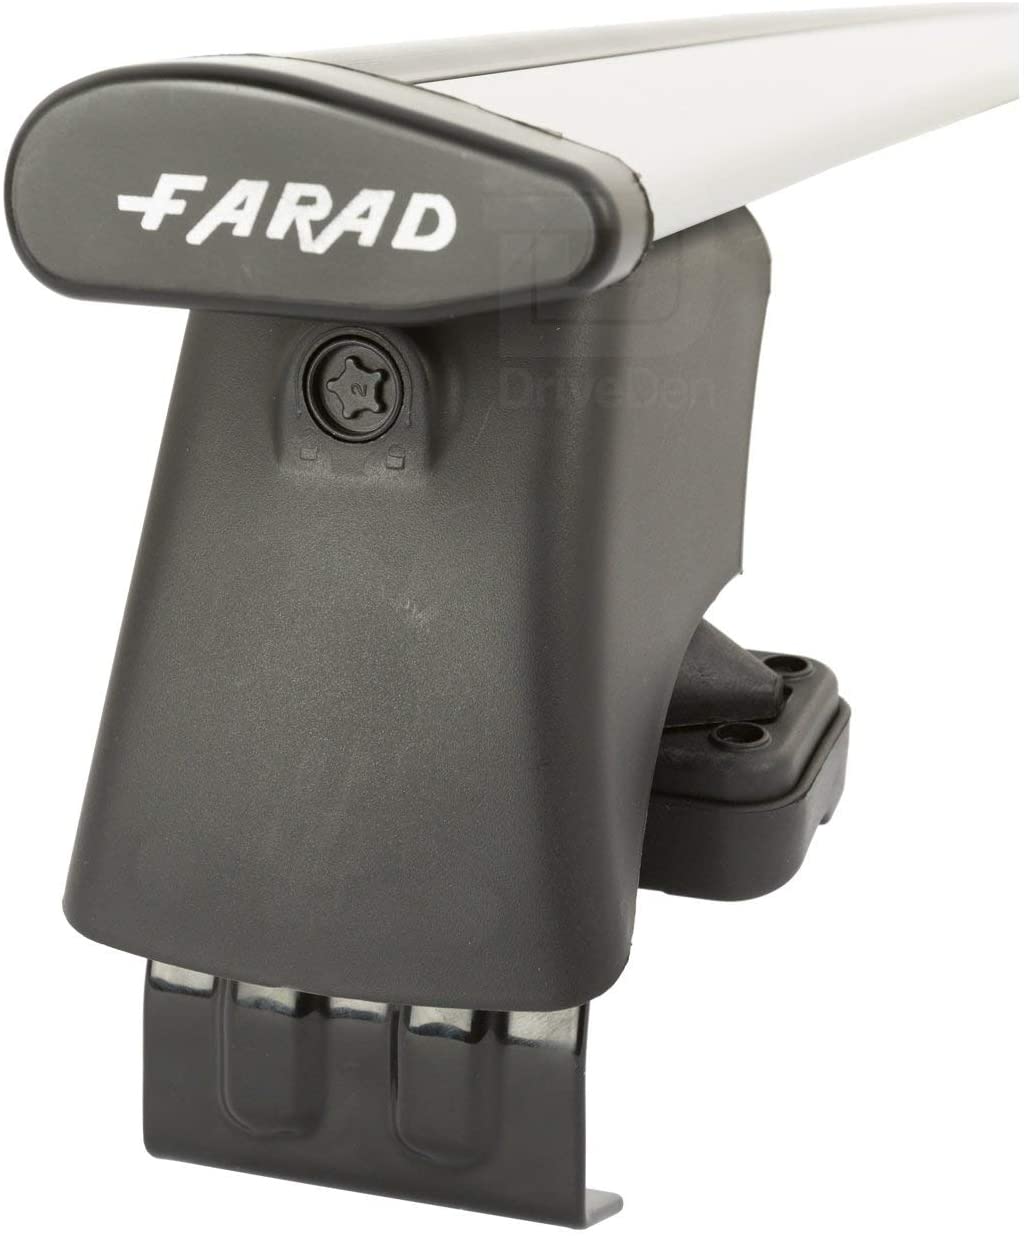 FARAD-Kit H2 per barre portatutto - Peugeot 107 2005-2014 (senza corrimano)